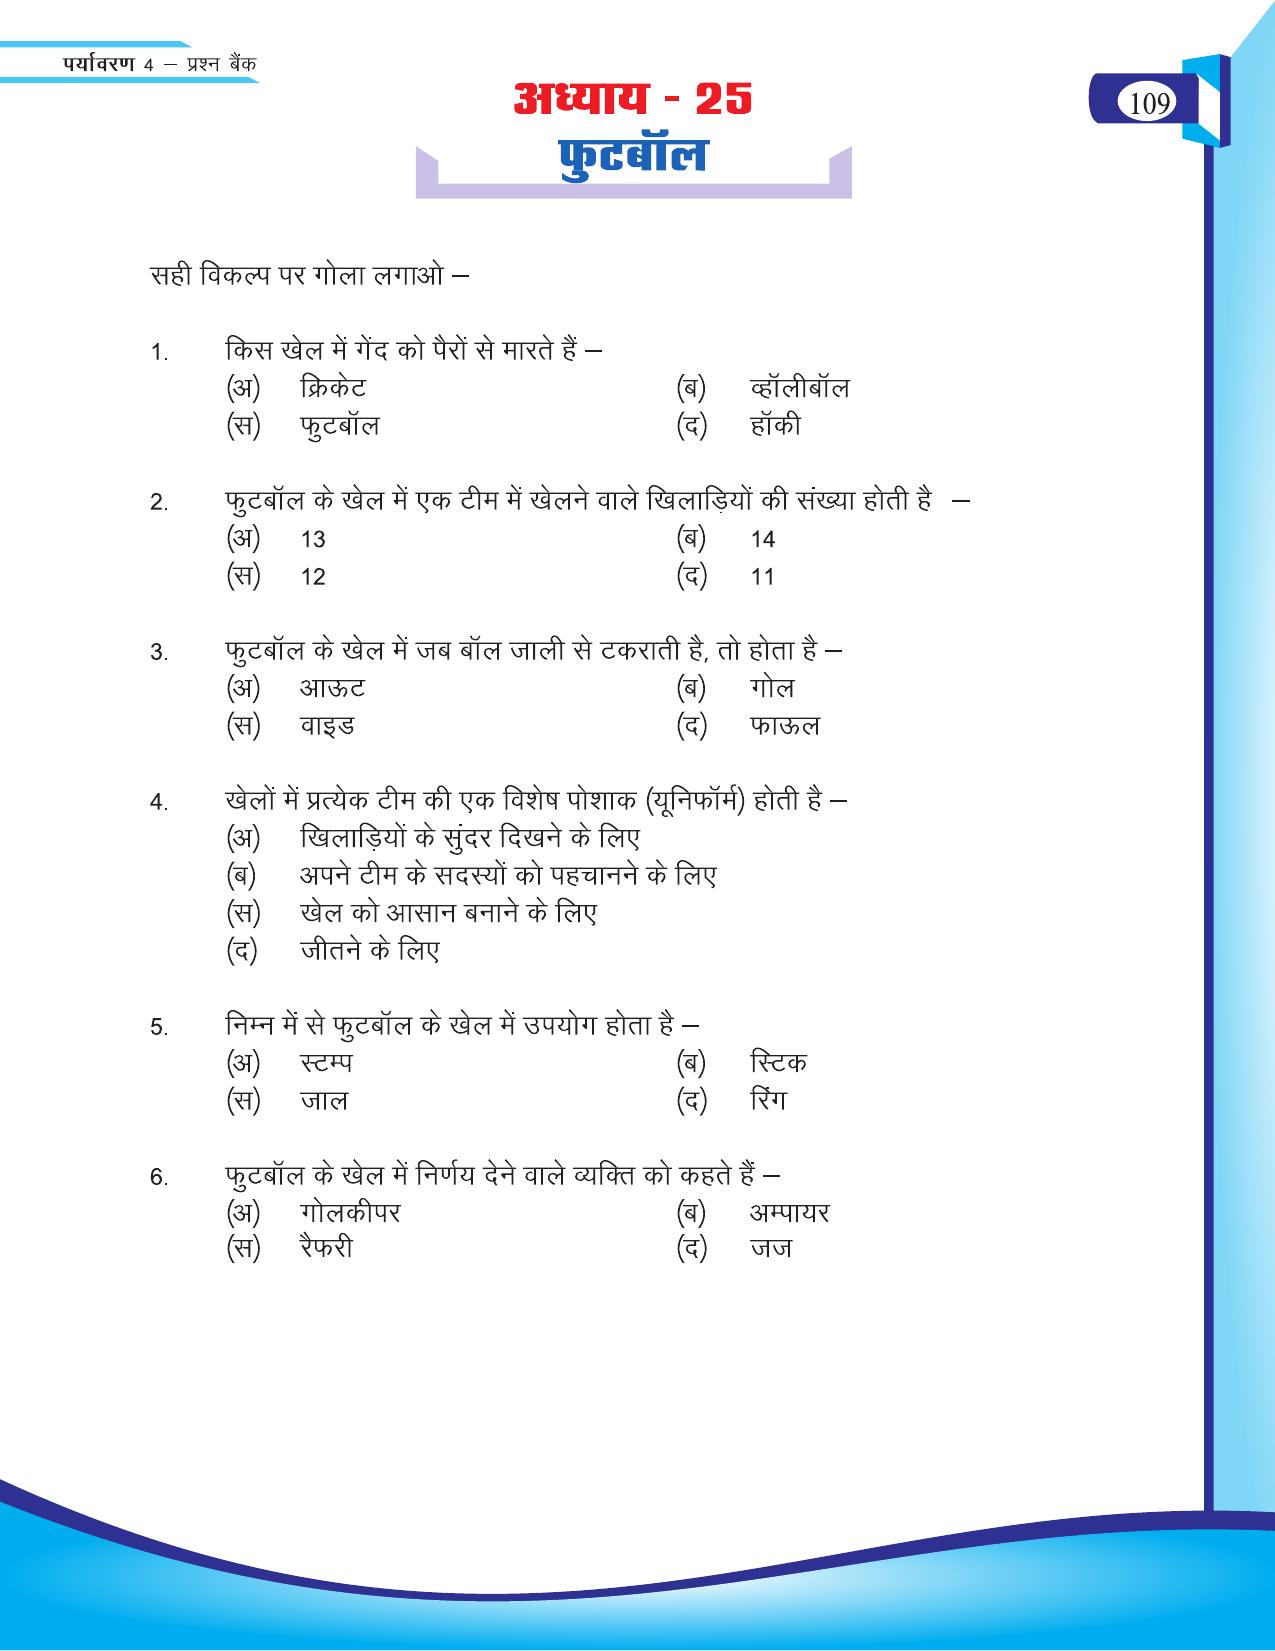 Chhattisgarh Board Class 4 EVS Question Bank 2015-16 - Page 38